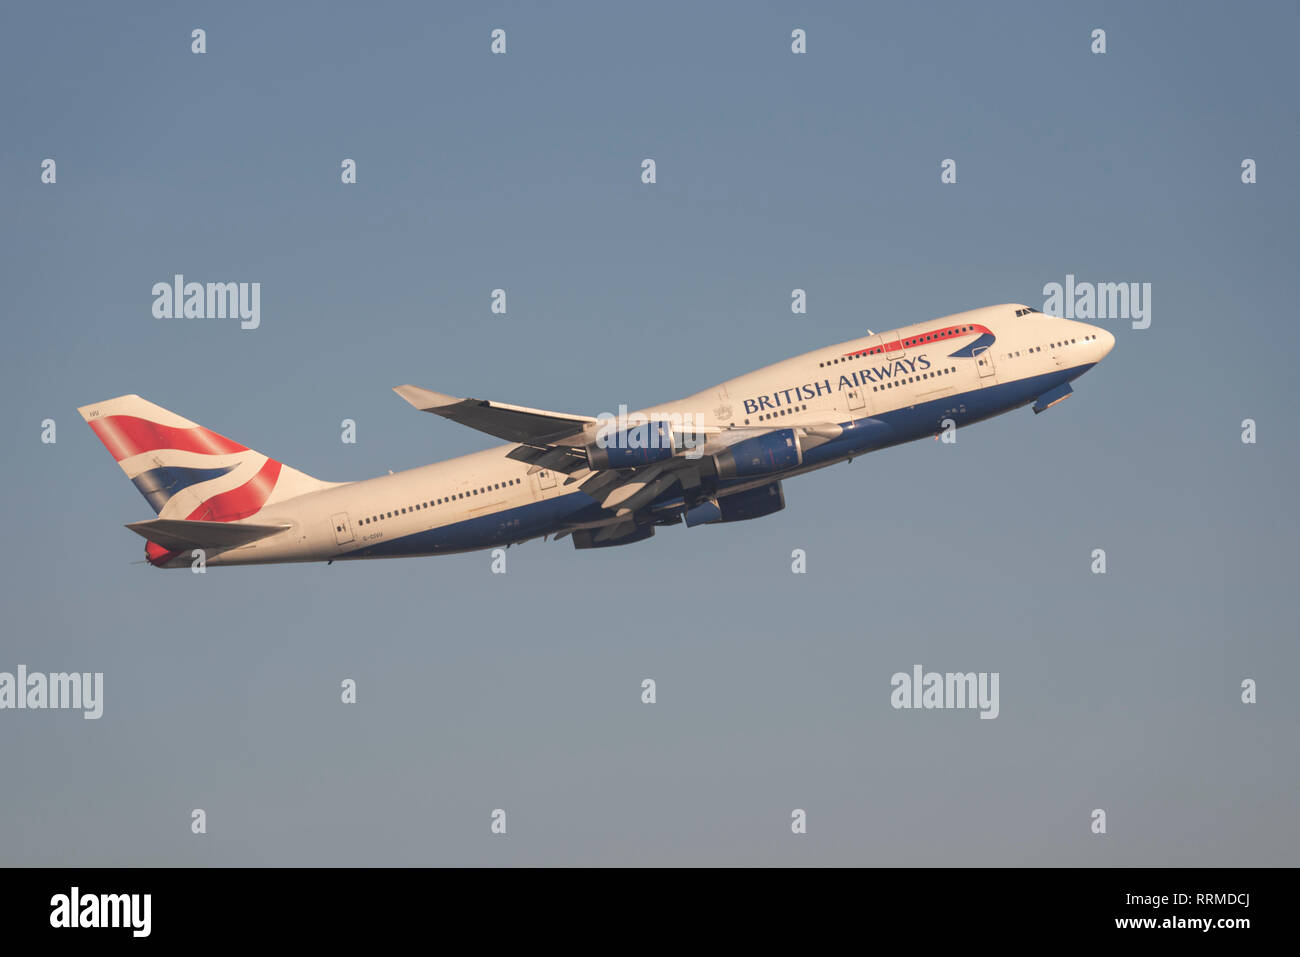 British Airways Boeing 747 Jumbo Jet aereo jet piano G-CIVU decollo dall'Aeroporto Heathrow di Londra, Regno Unito. Compagnia aerea della partenza del volo Foto Stock